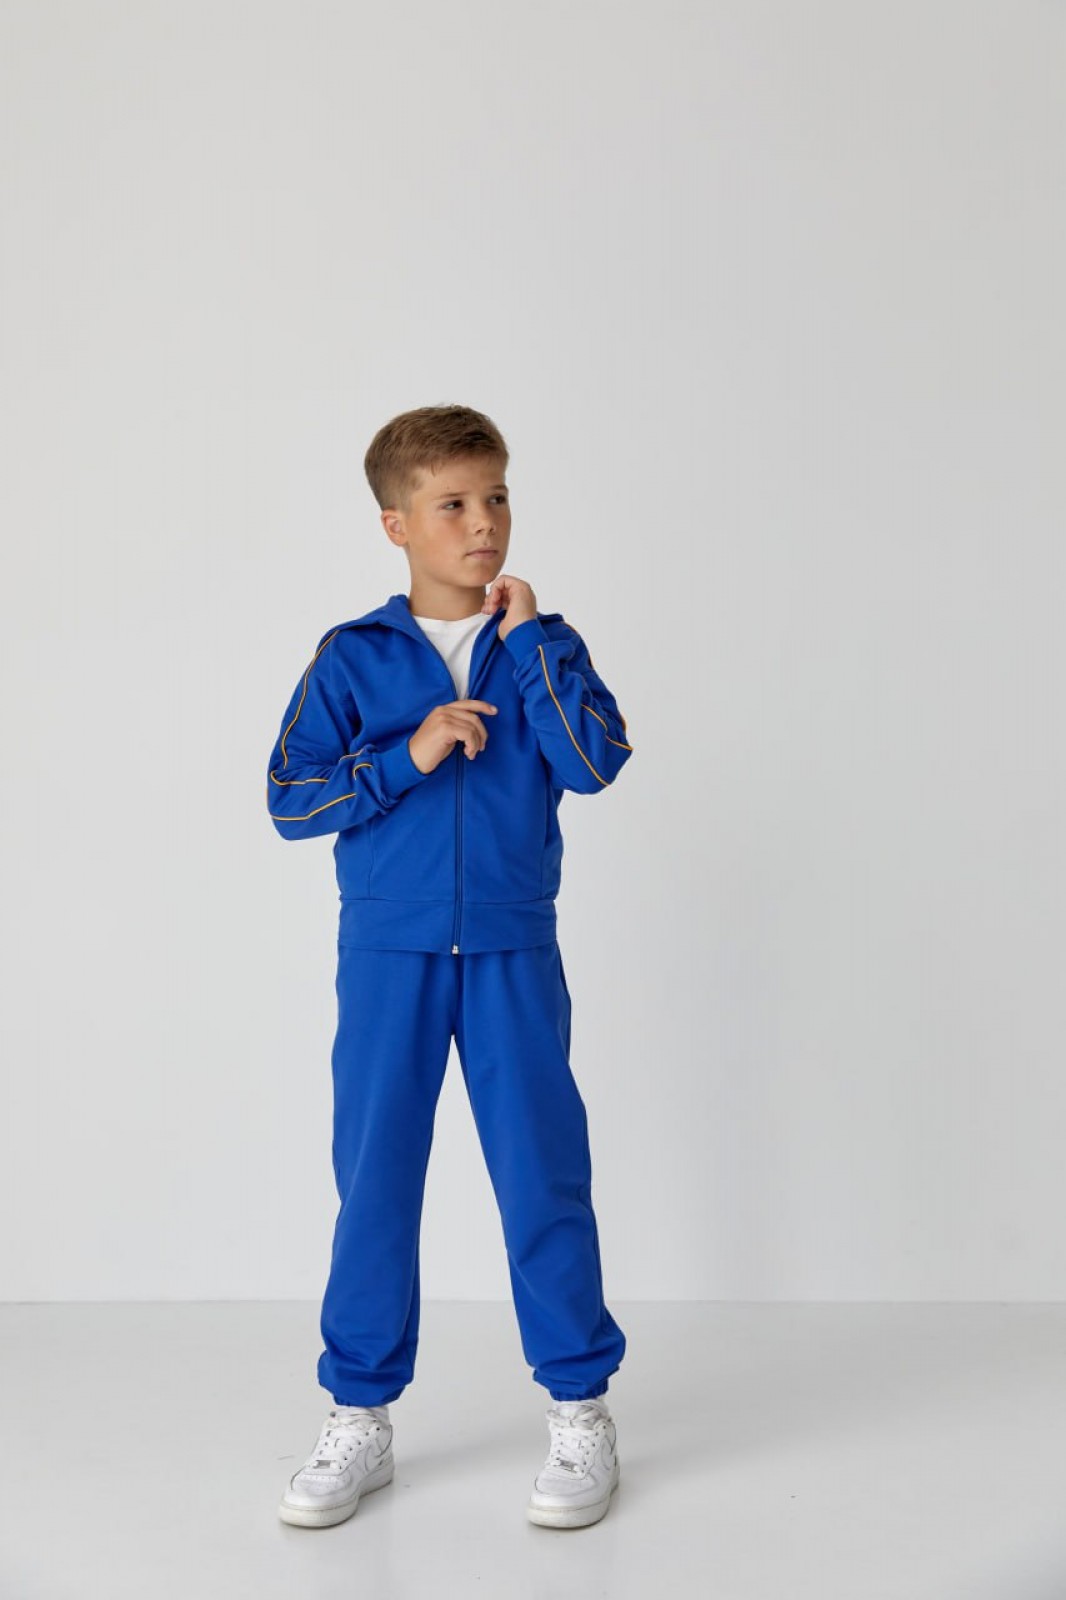 Дитячий спортивний костюм для хлопчика електрик р.140 439131